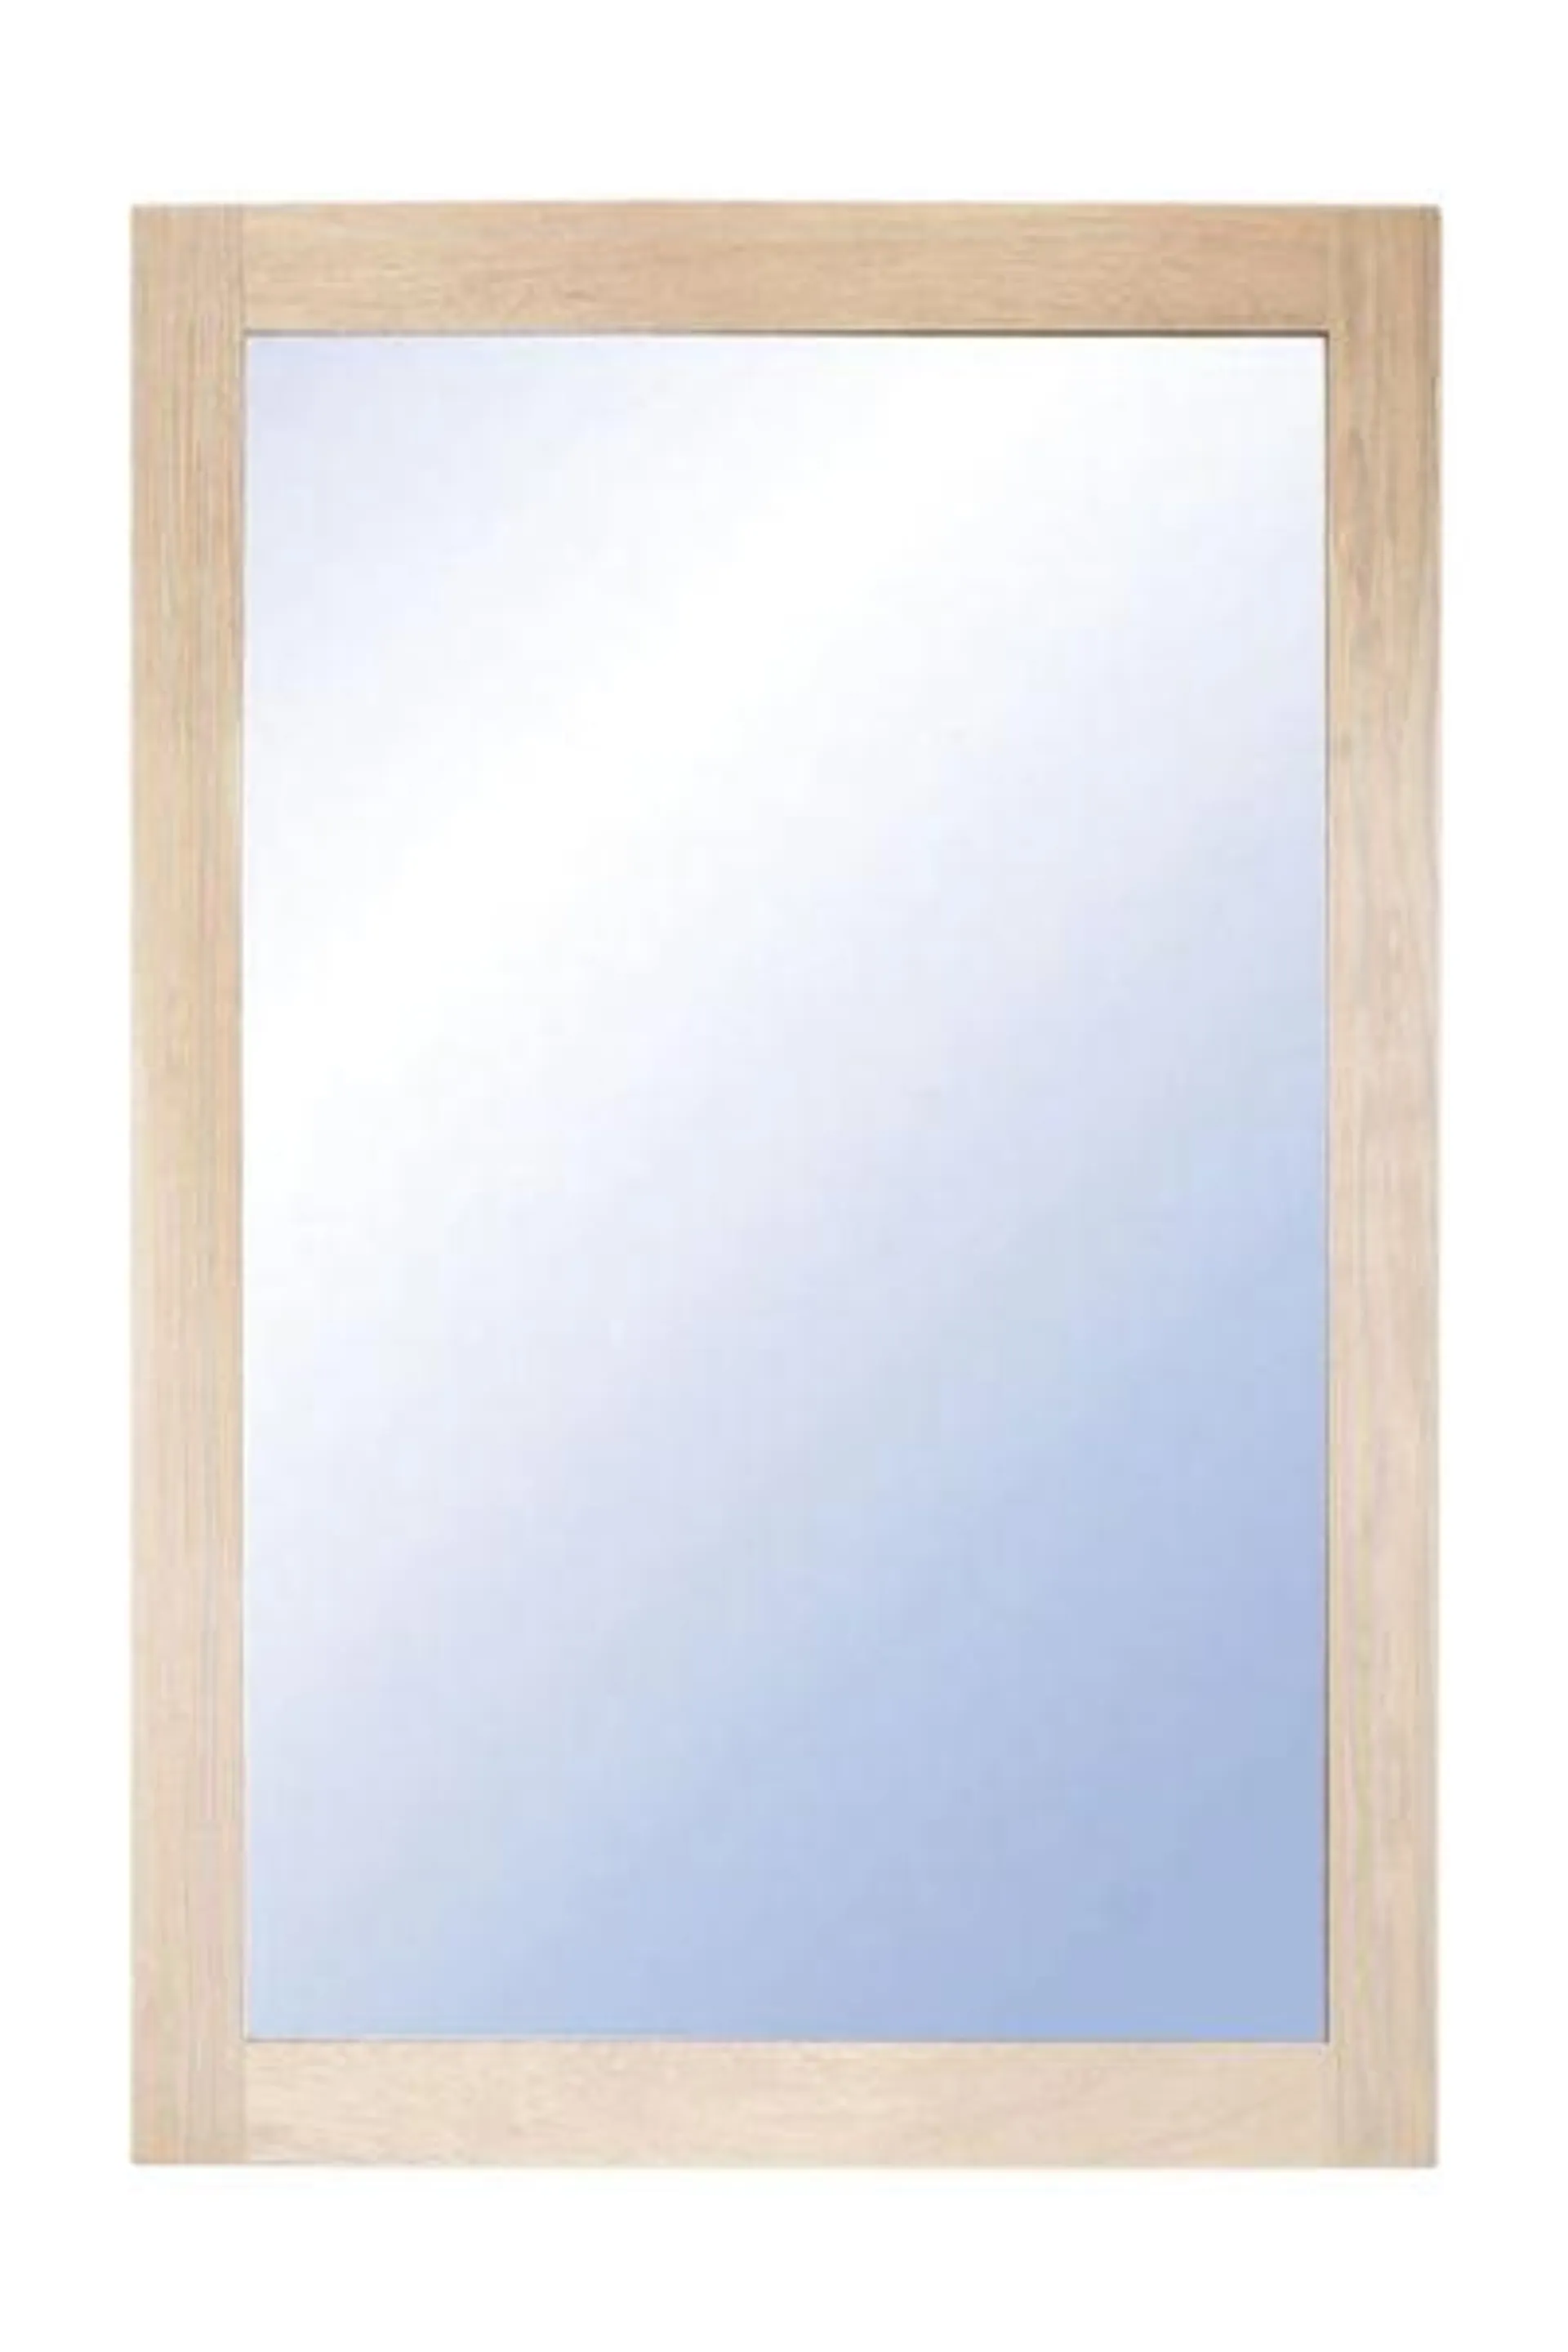 NOVA Spegel 90x60 vitoljad ek